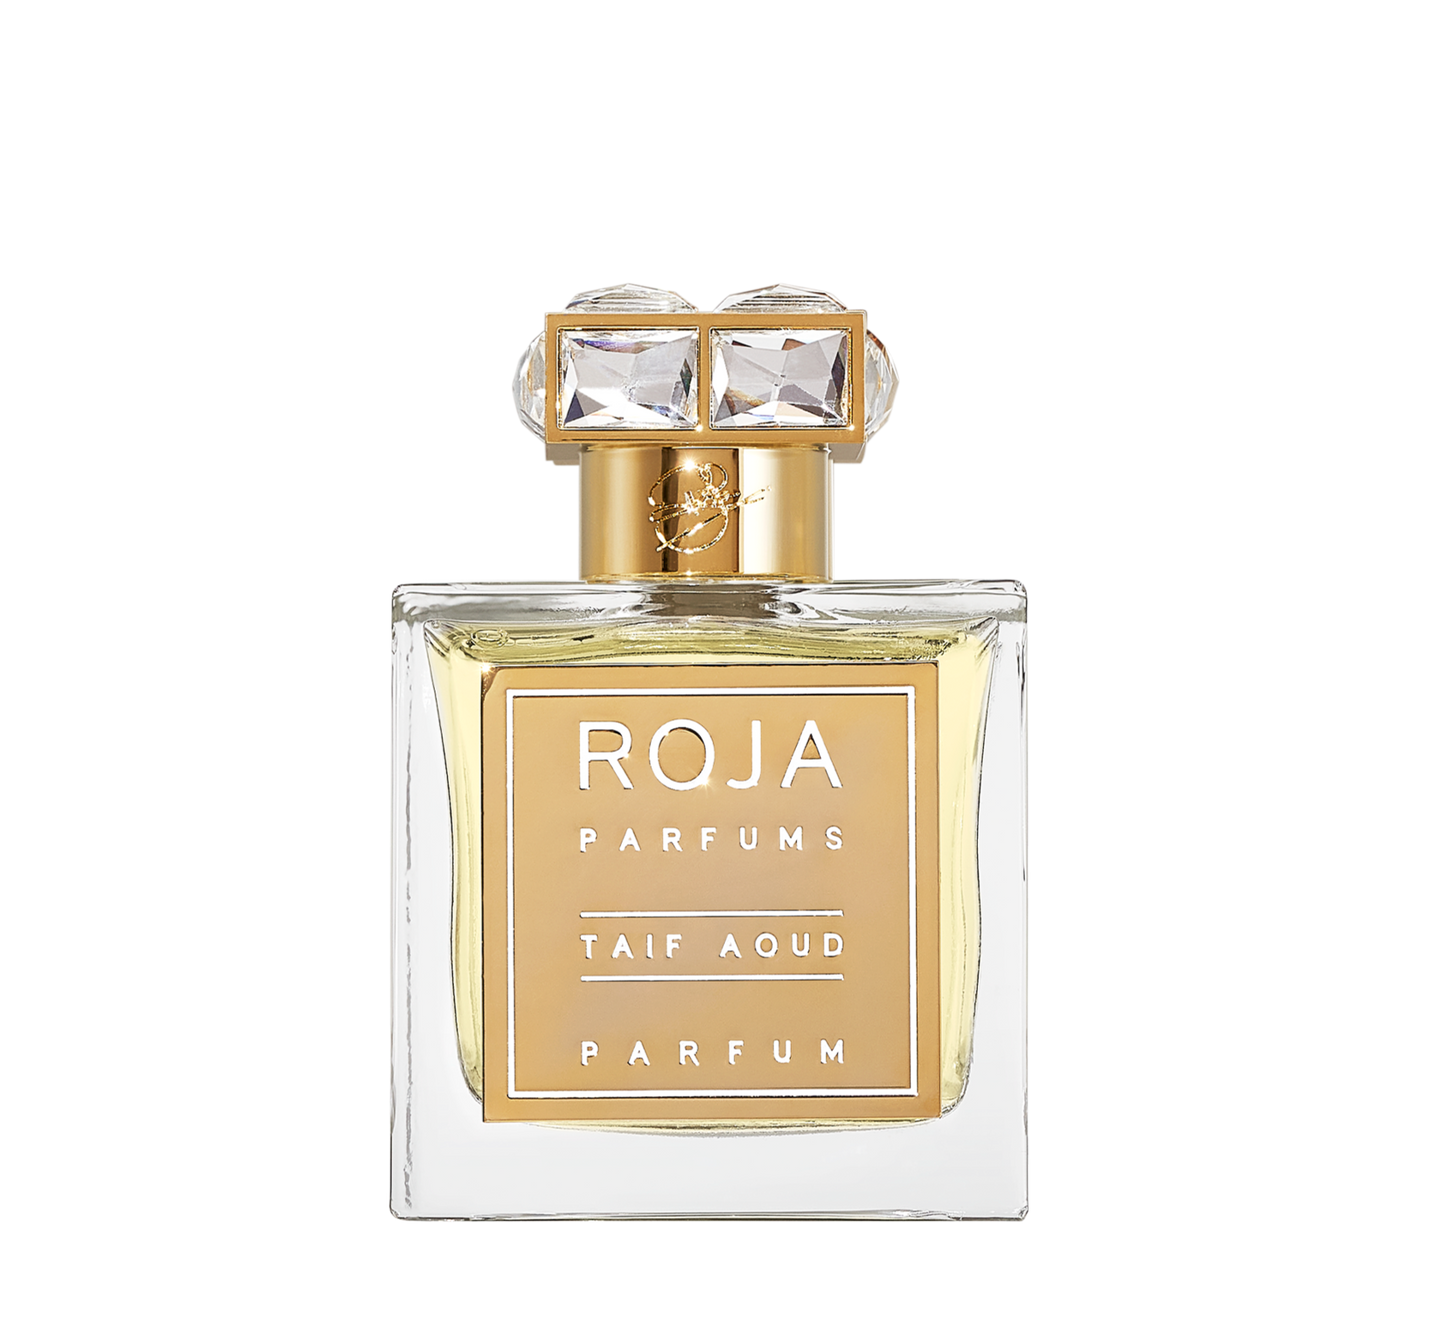 Taif Aoud Parfum Roja Parfums Sample 2ml